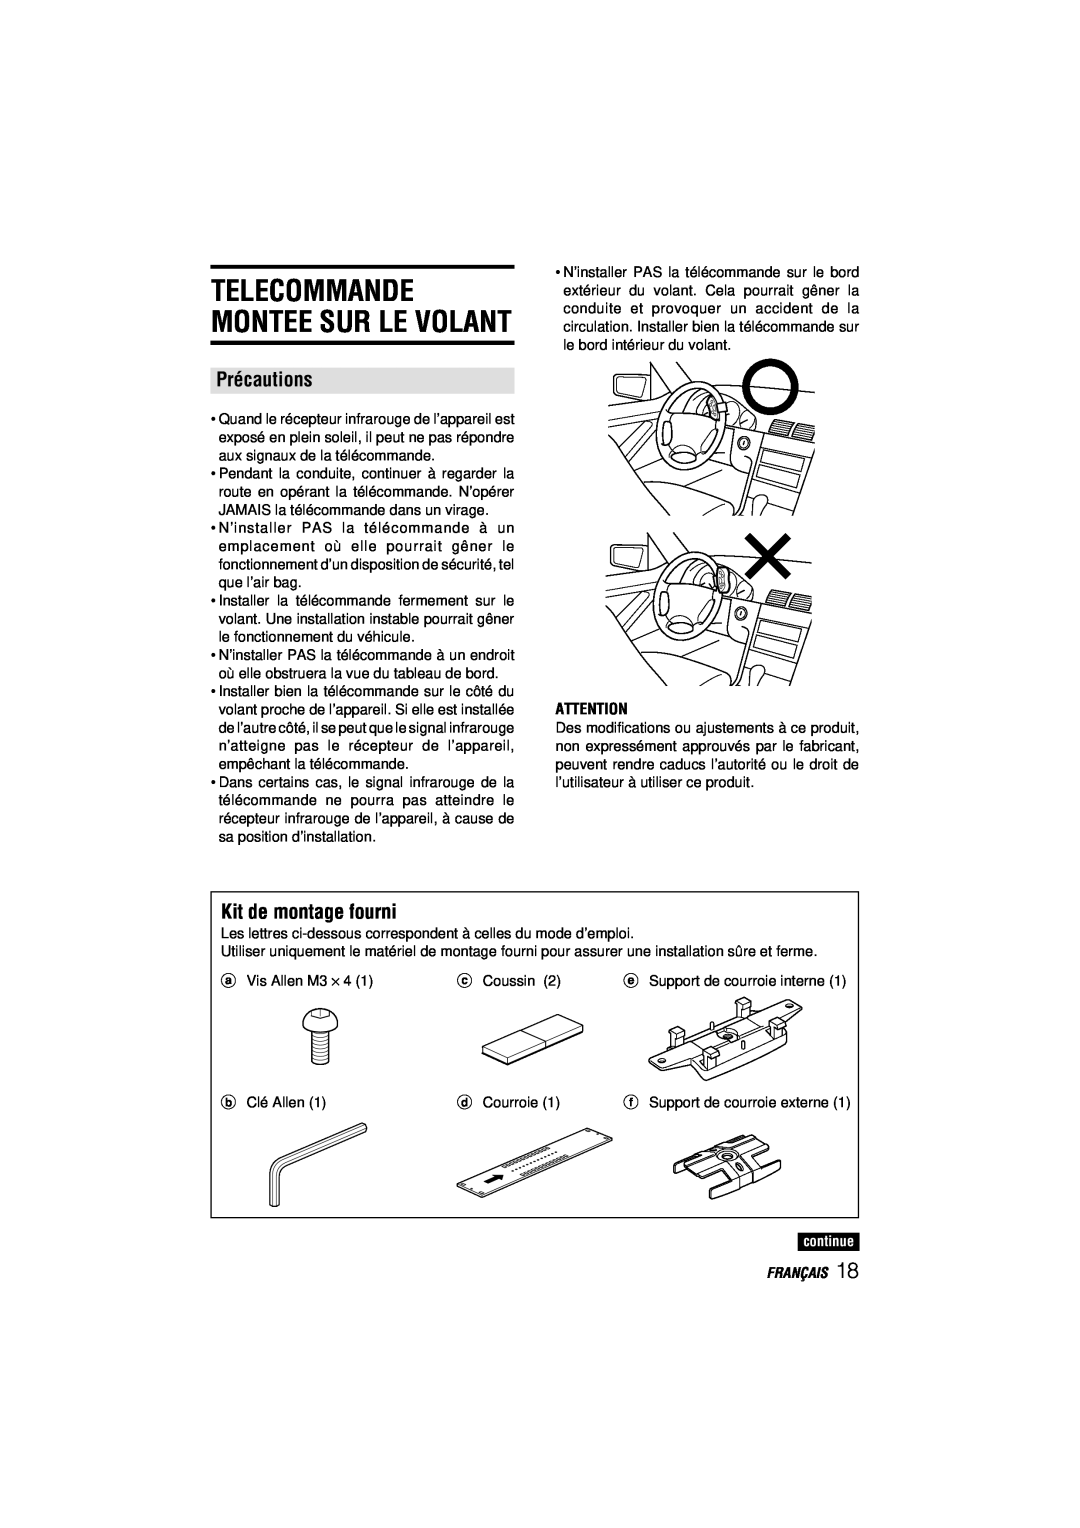 Aiwa CDC-MP3 manual Telecommande Montee Sur Le Volant, Précautions, Kit de montage fourni, continue, Français 